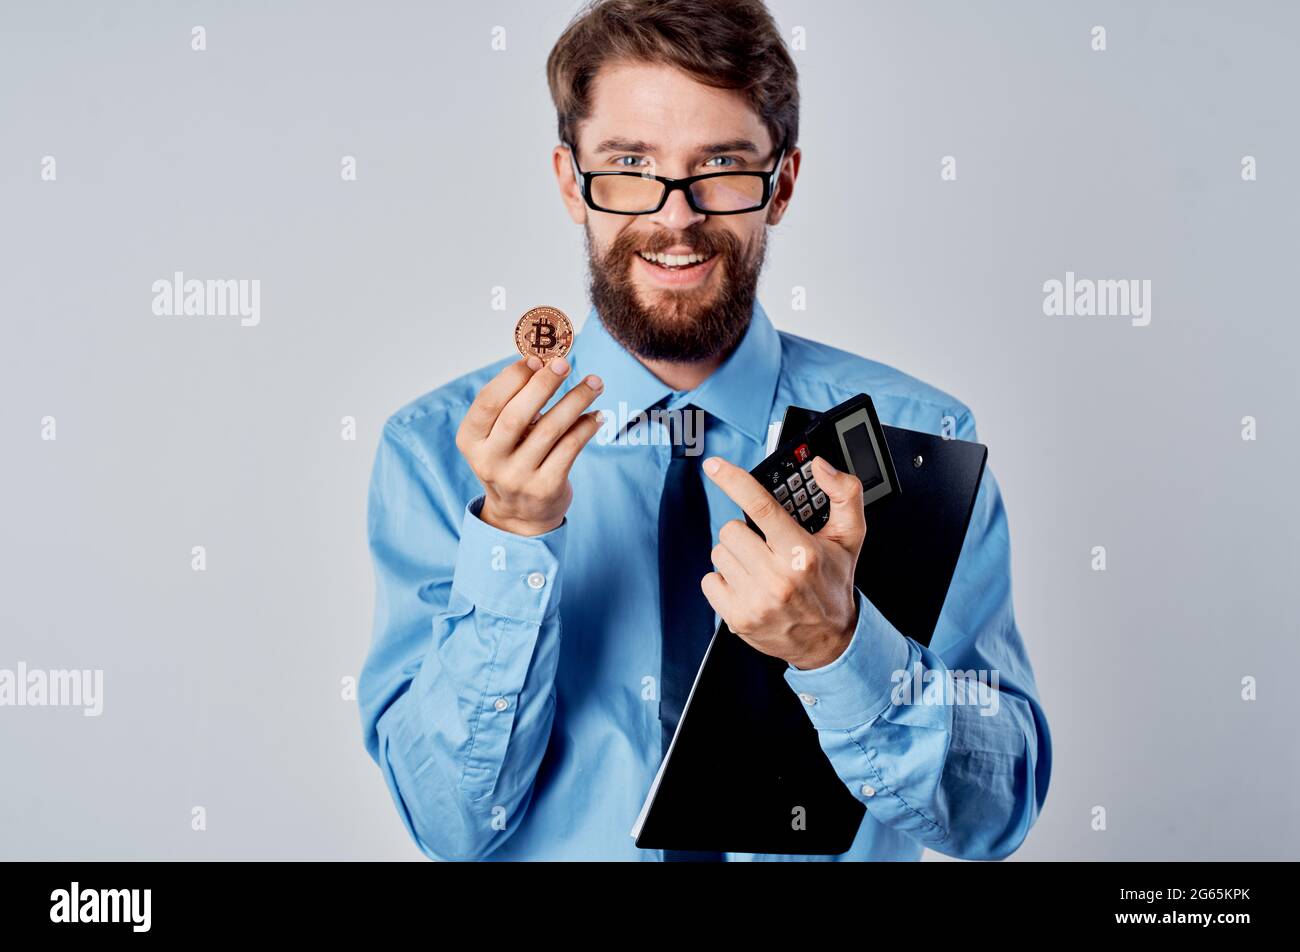 Mann in blauem Hemd Kryptowährung Bitcoin Krawatte elektronischen Geschäft  Stockfotografie - Alamy